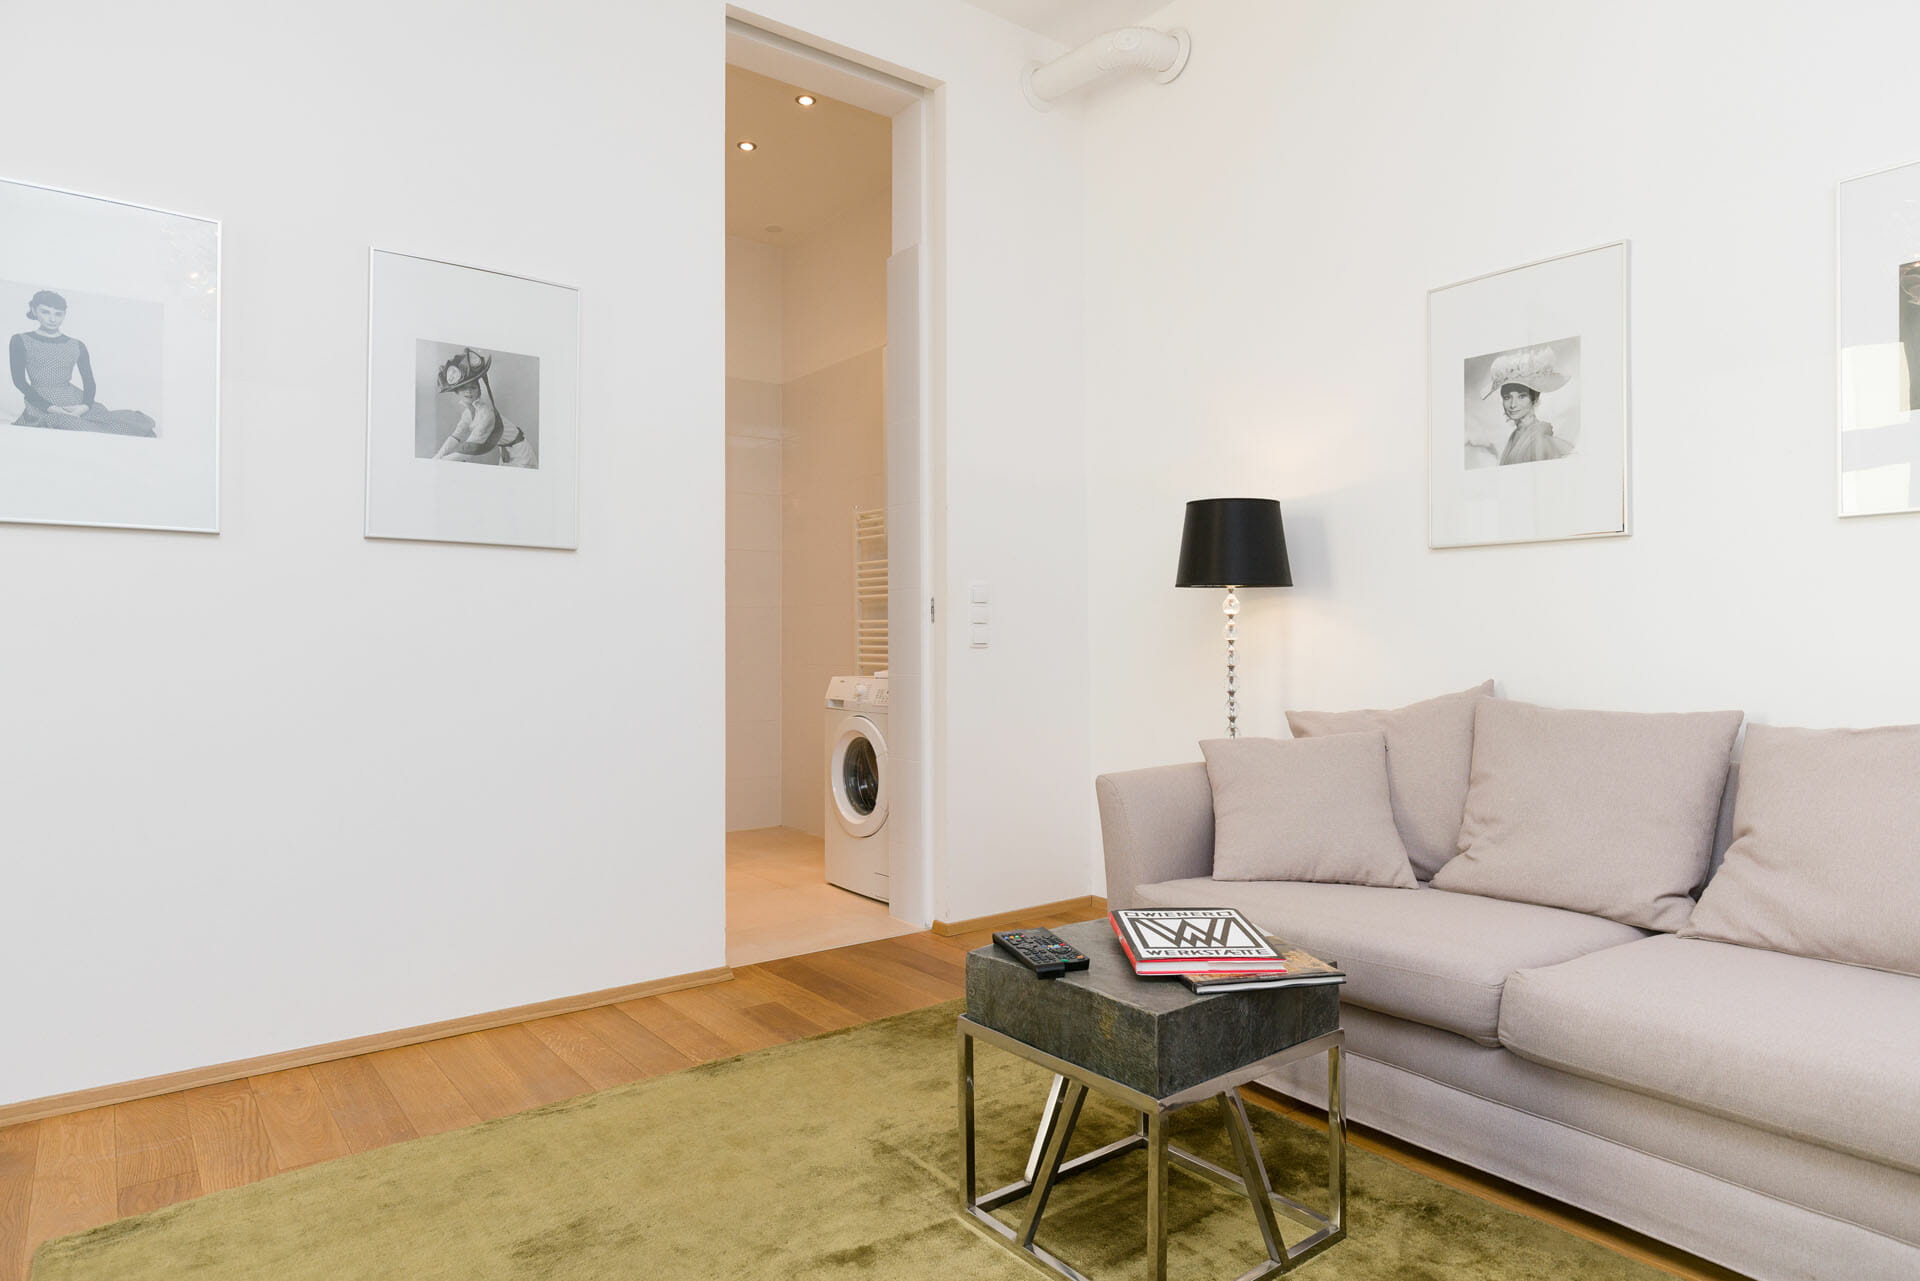 Prestige Apartments. Luxury Apartment in Vienna with premium furniture. Alser Strasse 14. Apartments size in m²: 49
District: 1090 Alsergrund
Bedroom: 1